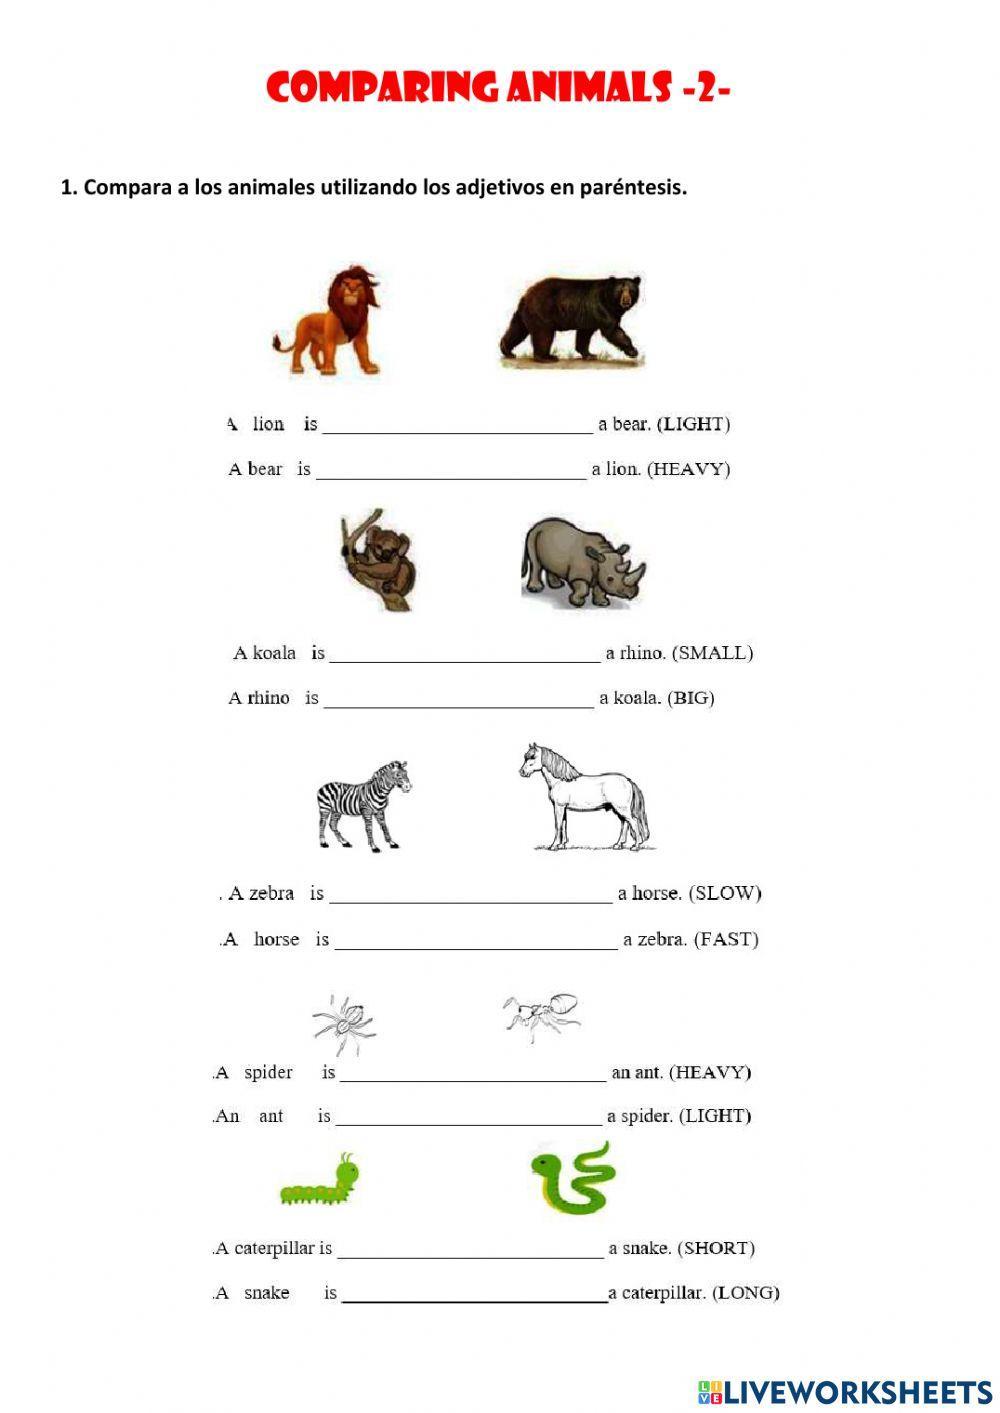 Comparing animals 2